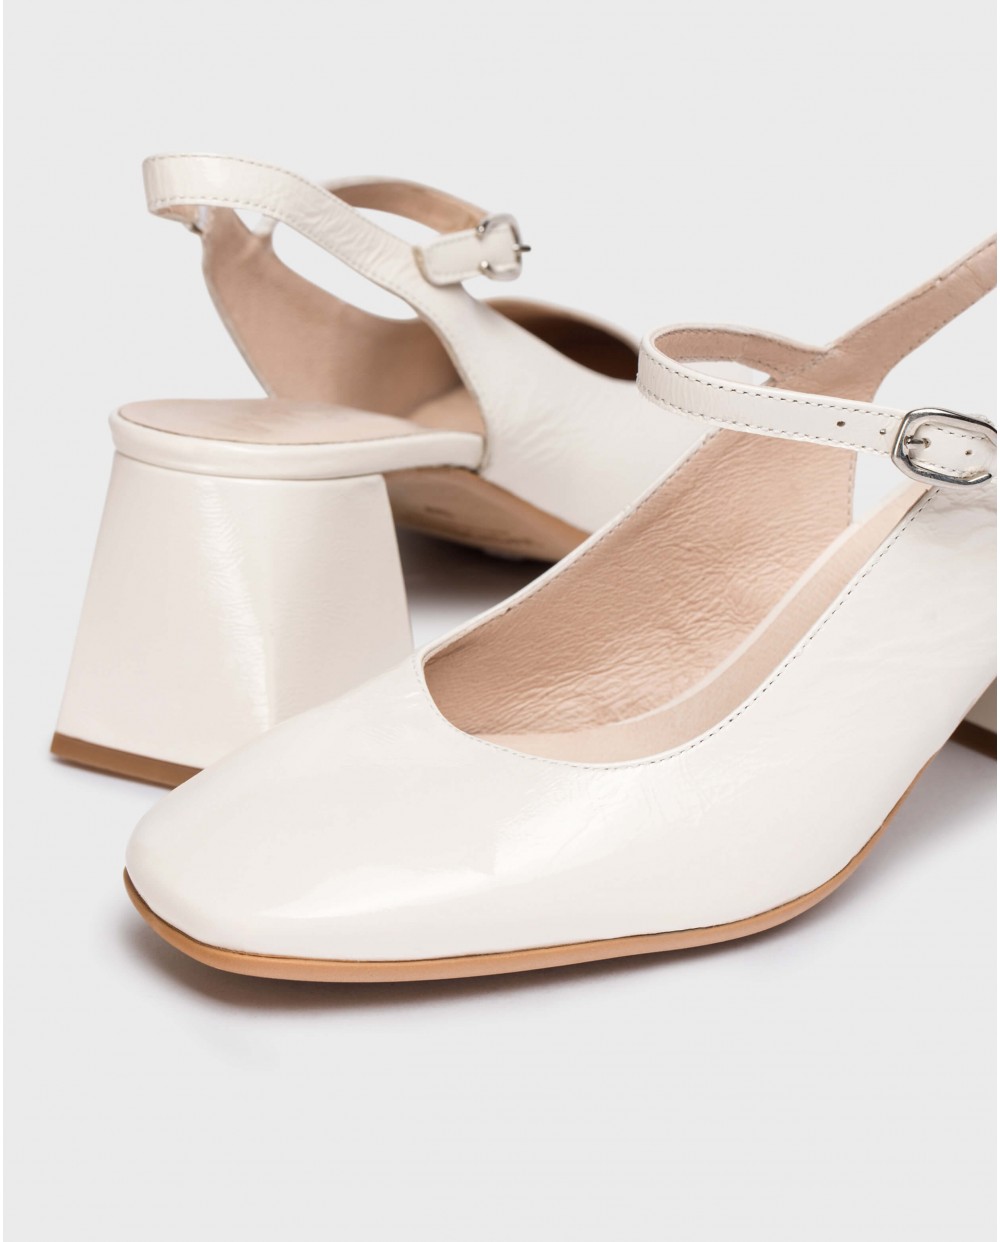 Wonders-Heels-White Jane slingback sandals